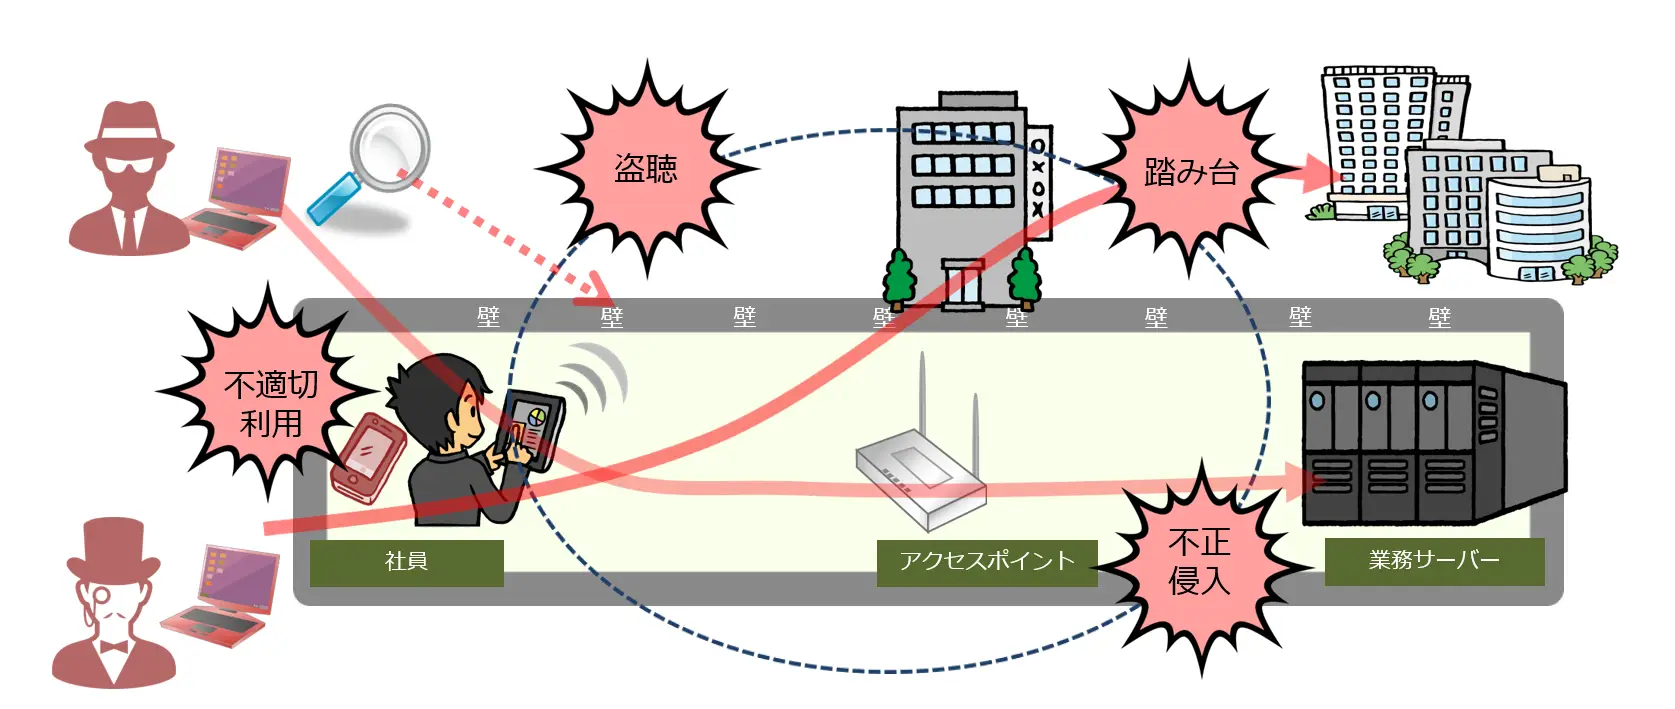 無線LANにおけるセキュリティの課題